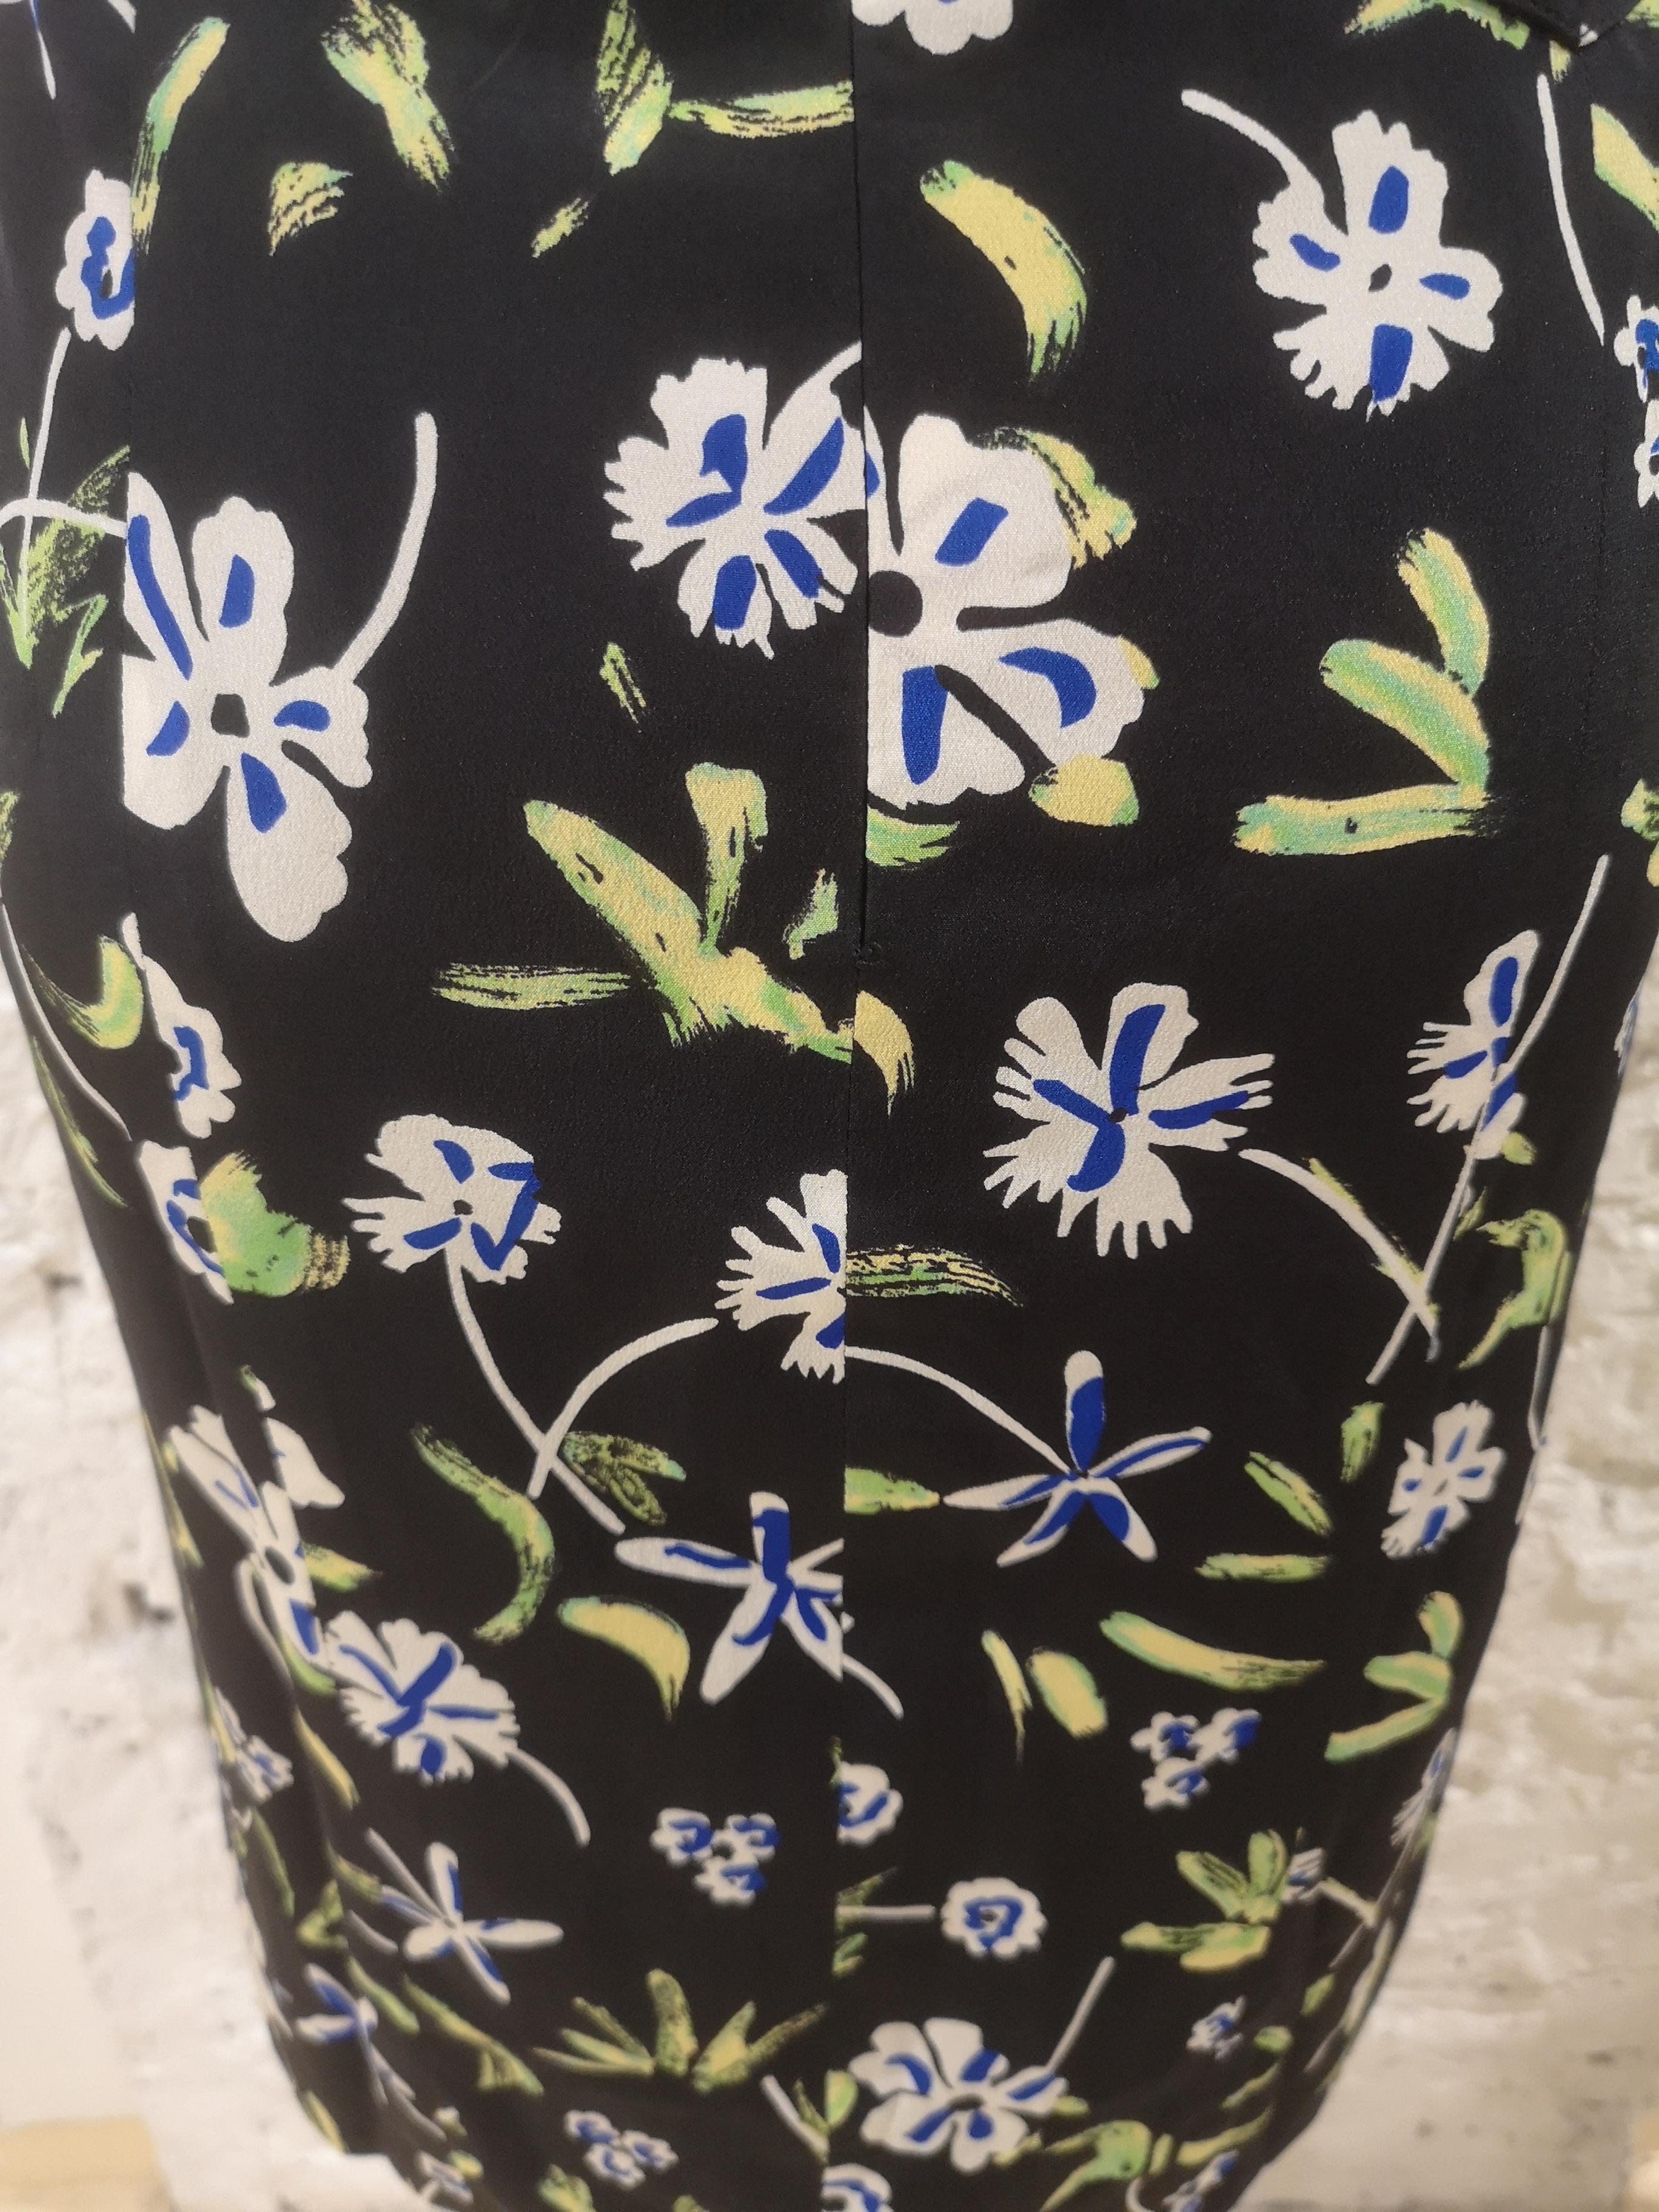 Chanel Seidenblumenkleid
Mehrfarbiges Kleid in Größe 42 fr
Gesamtlänge 97 cm, Schultern 43 cm
